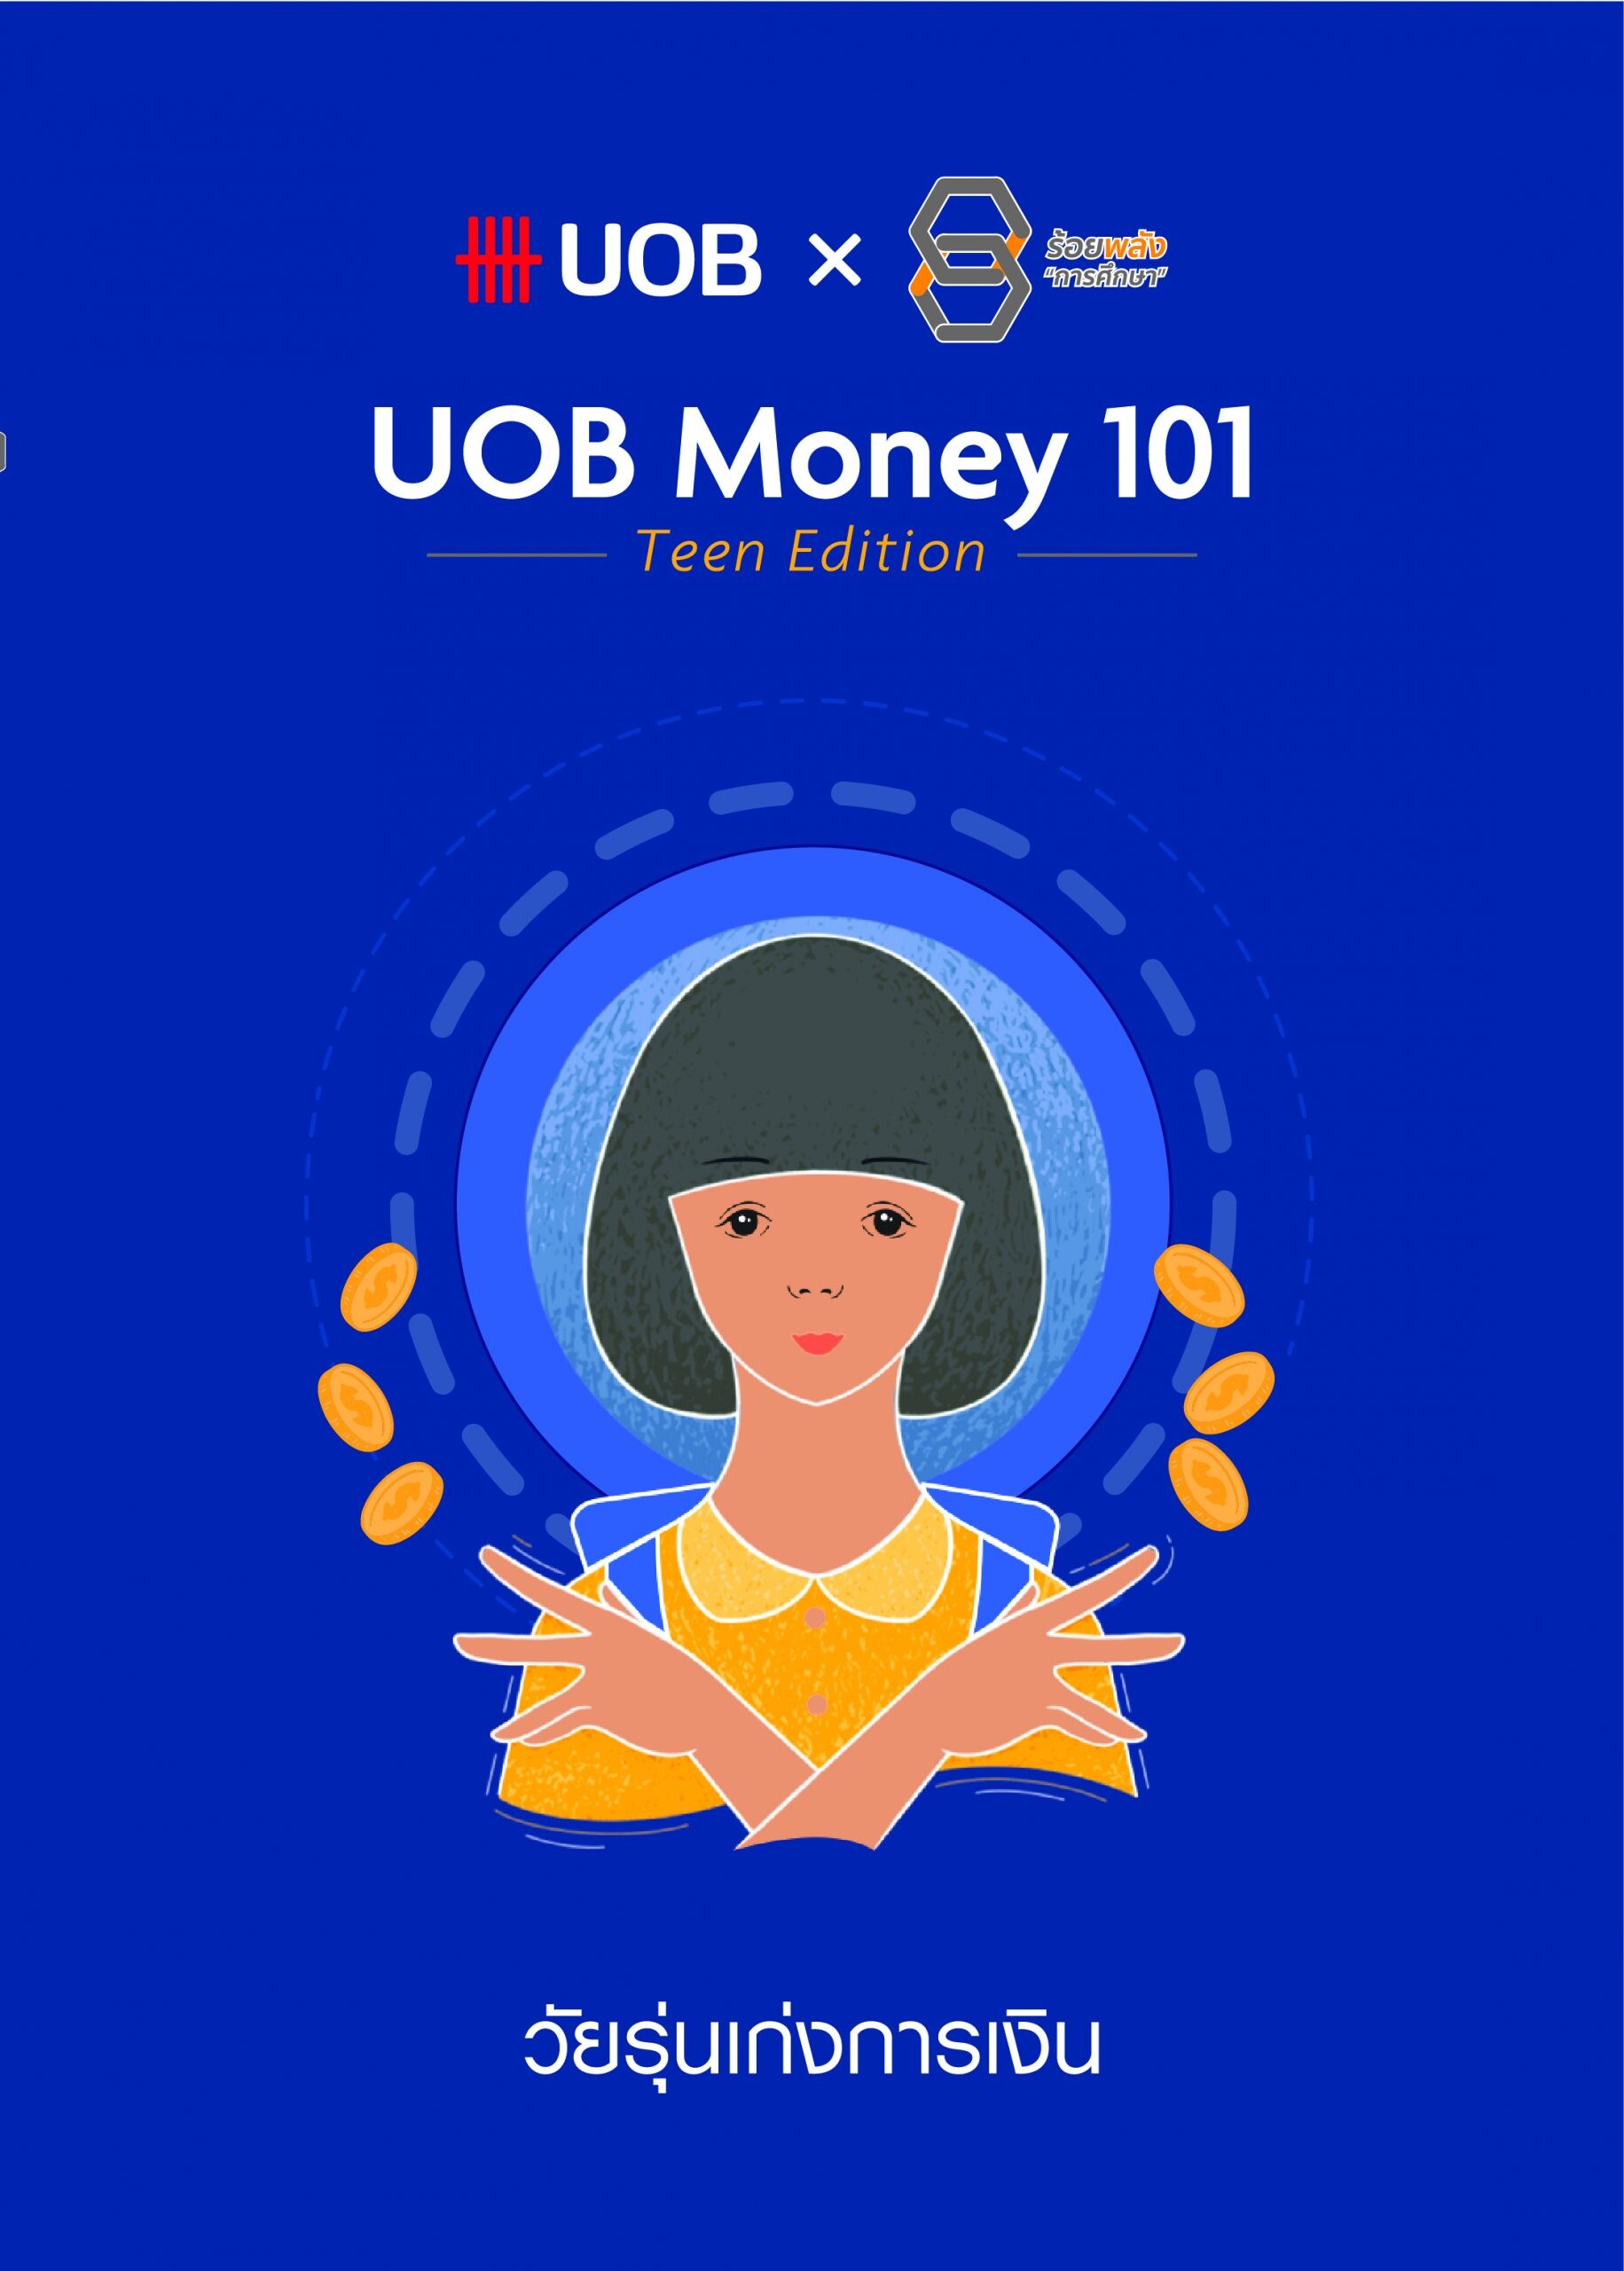 ยูโอบี ประเทศไทย เปิดตัว UOB Money 101 Teen Edition วัยรุ่นเก่งการเงิน หลักสูตรการเงินออนไลน์ เพื่อยกระดับคุณภาพชีวิตเด็กนักเรียนที่ด้อยโอกาสทั่วประเทศ